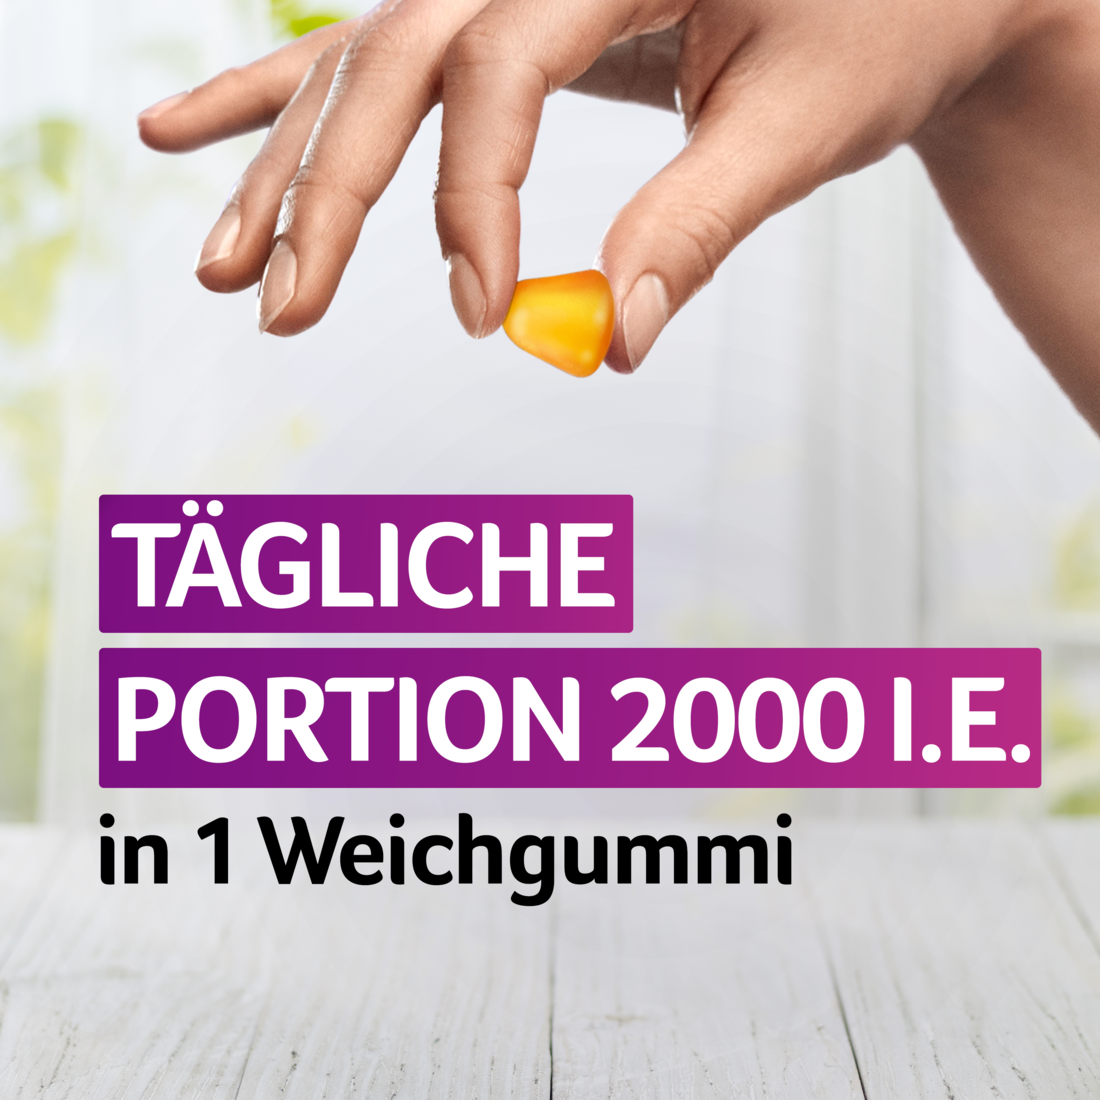 VIGANTOLVIT 2000 I.E. Vitamin D3 Weichgummis